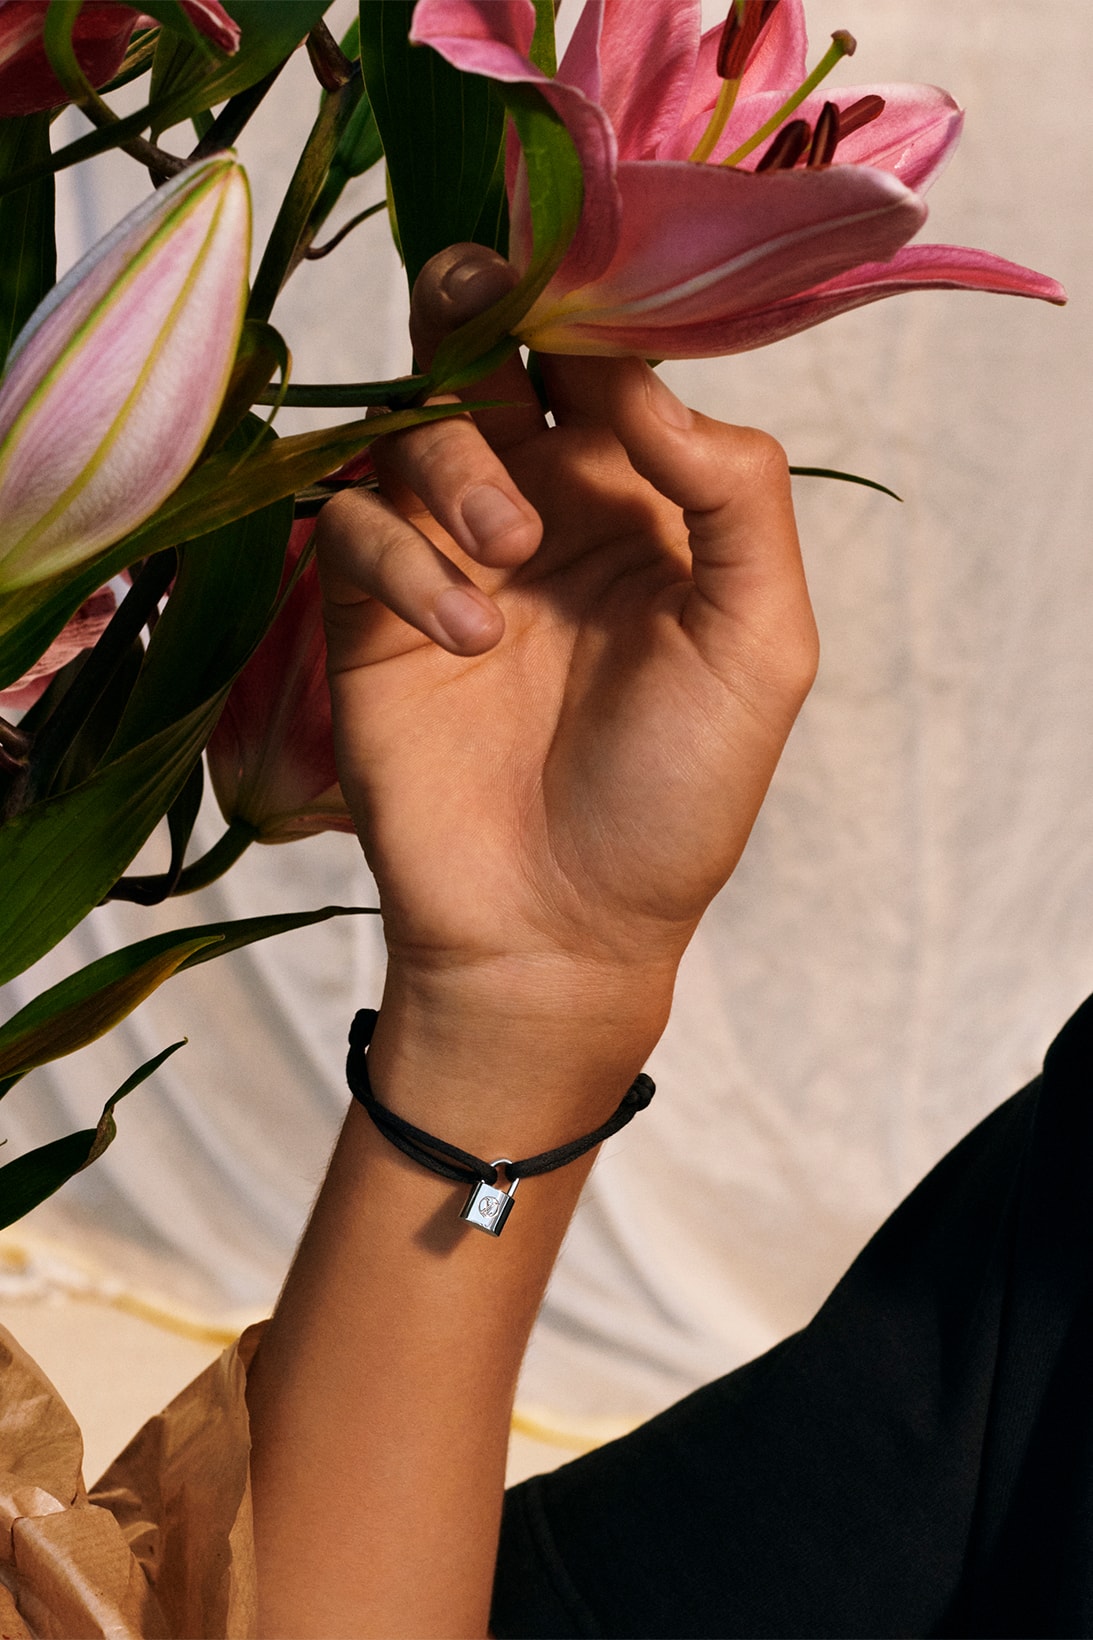 louis vuitton silver lockit bracelets unicef makeapromise campaign donation charity flowers black